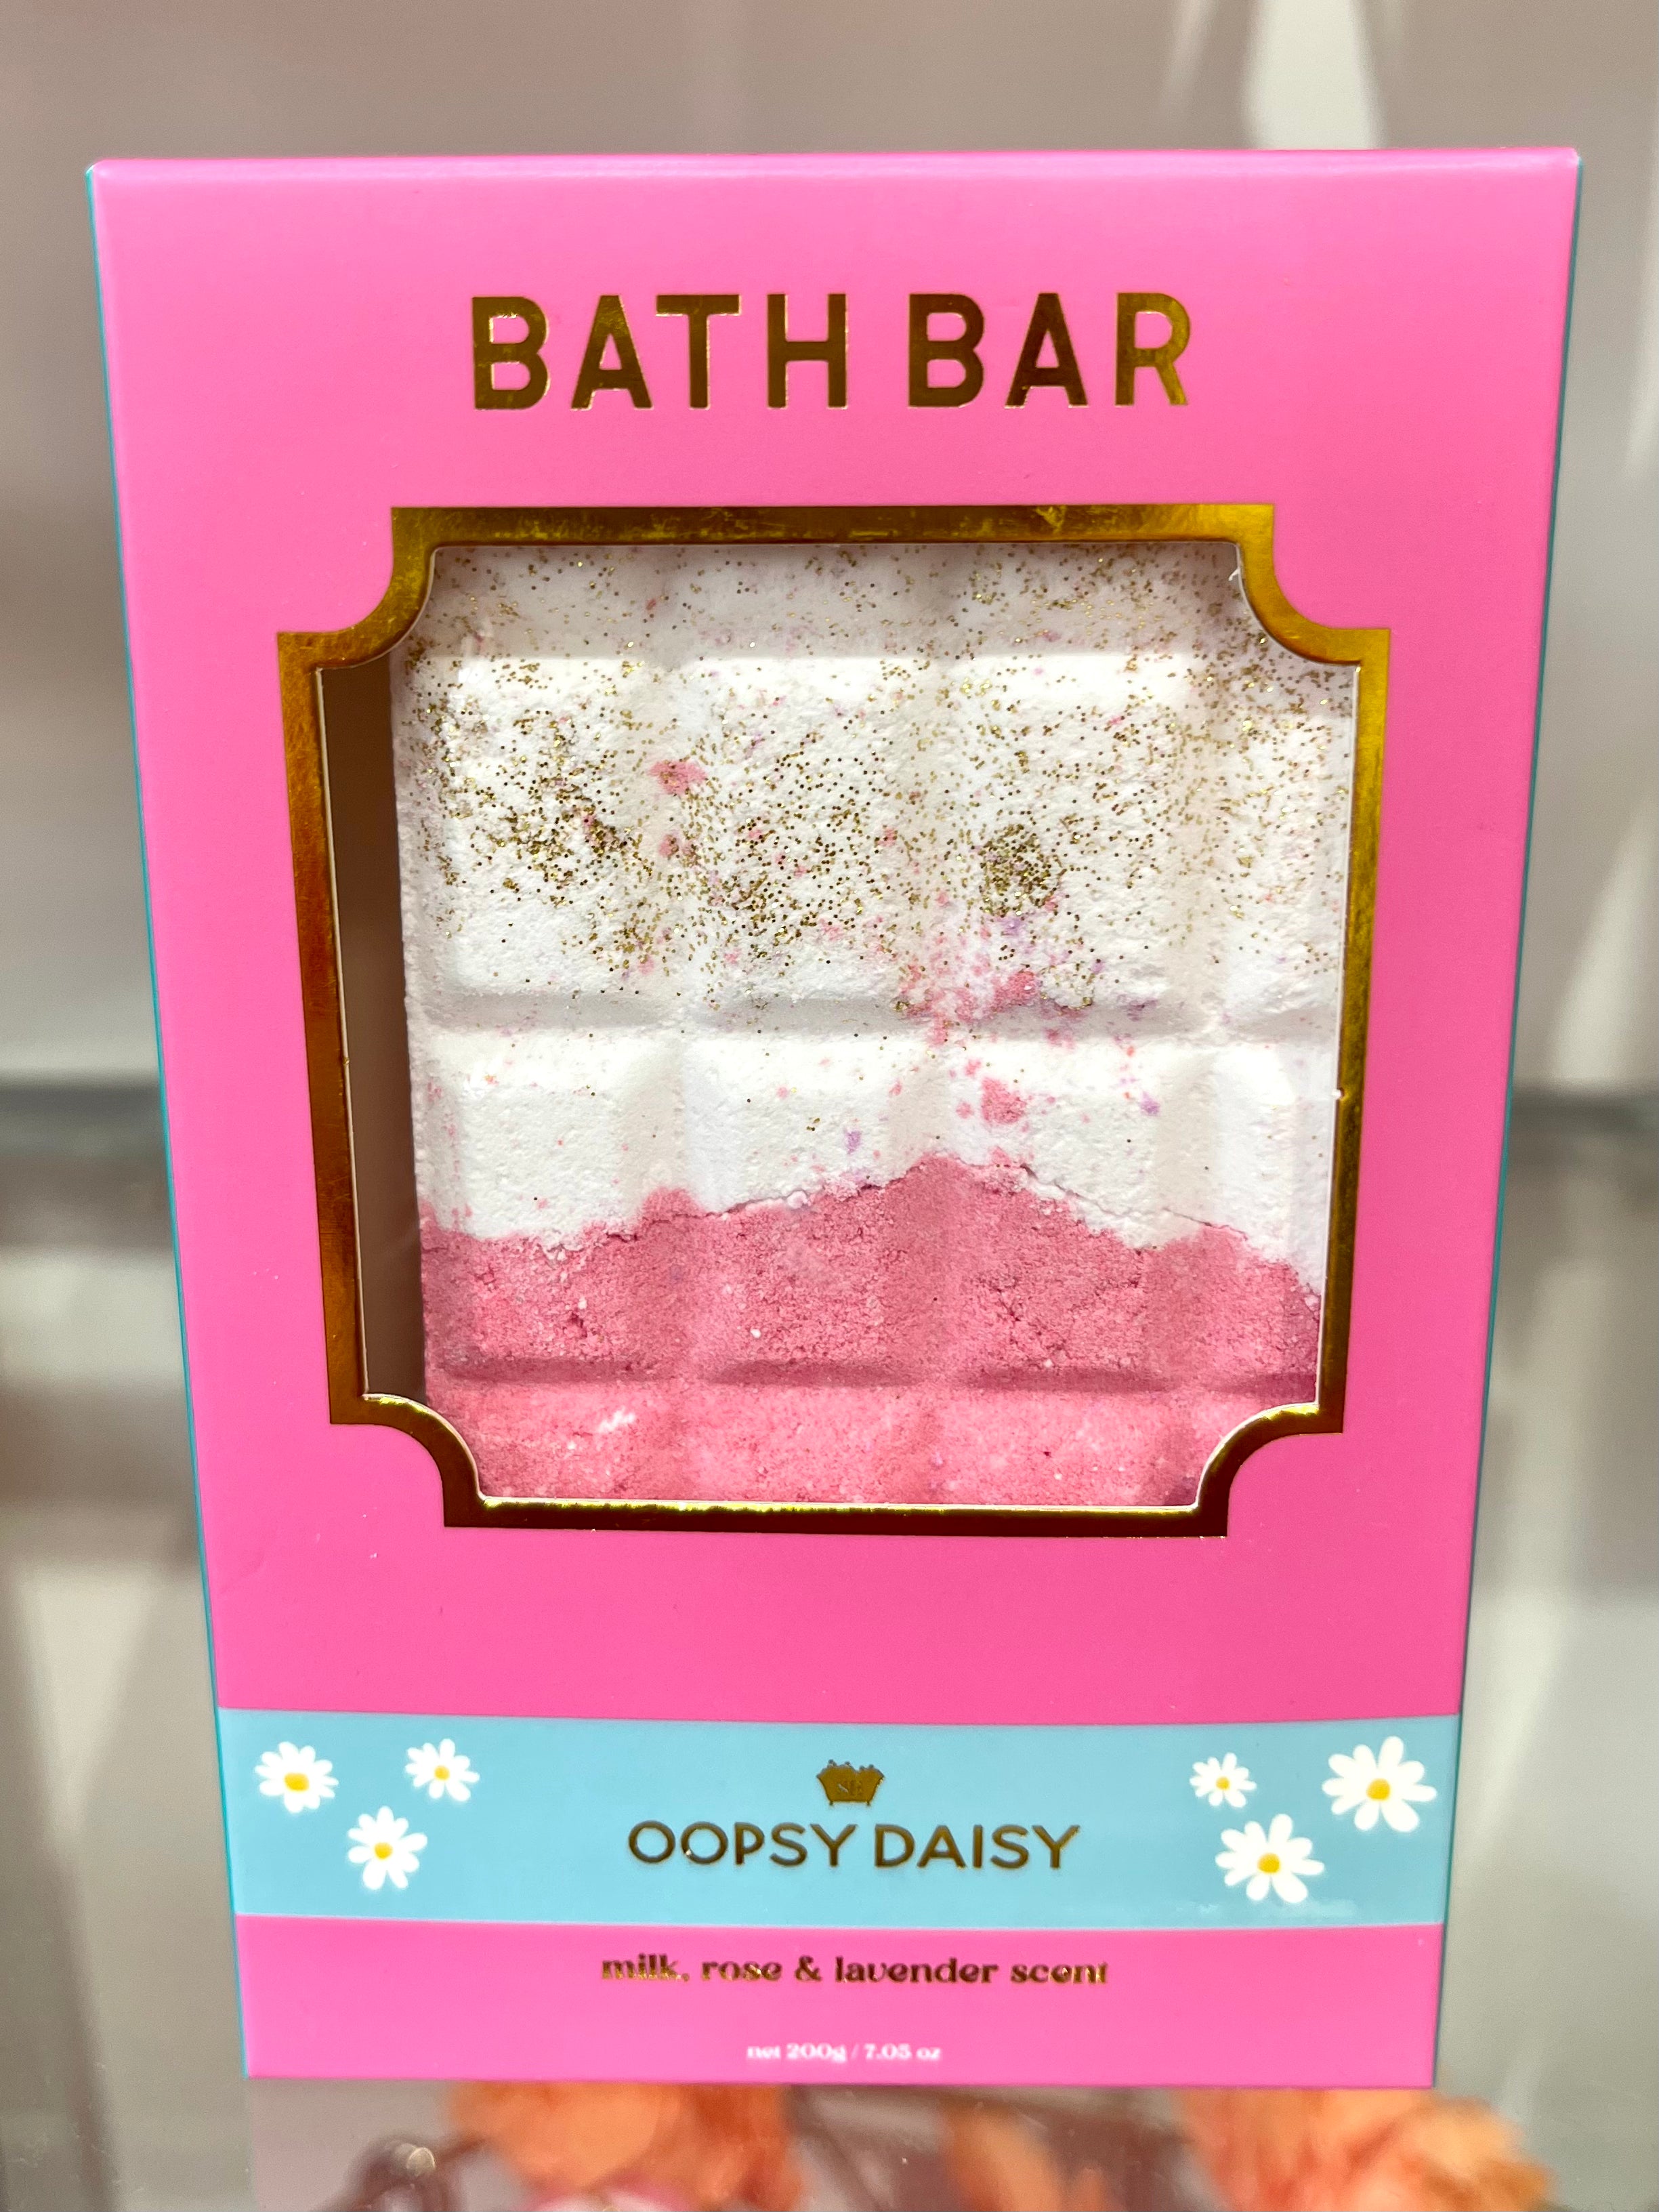 Oopsy Daisy Bath Bar